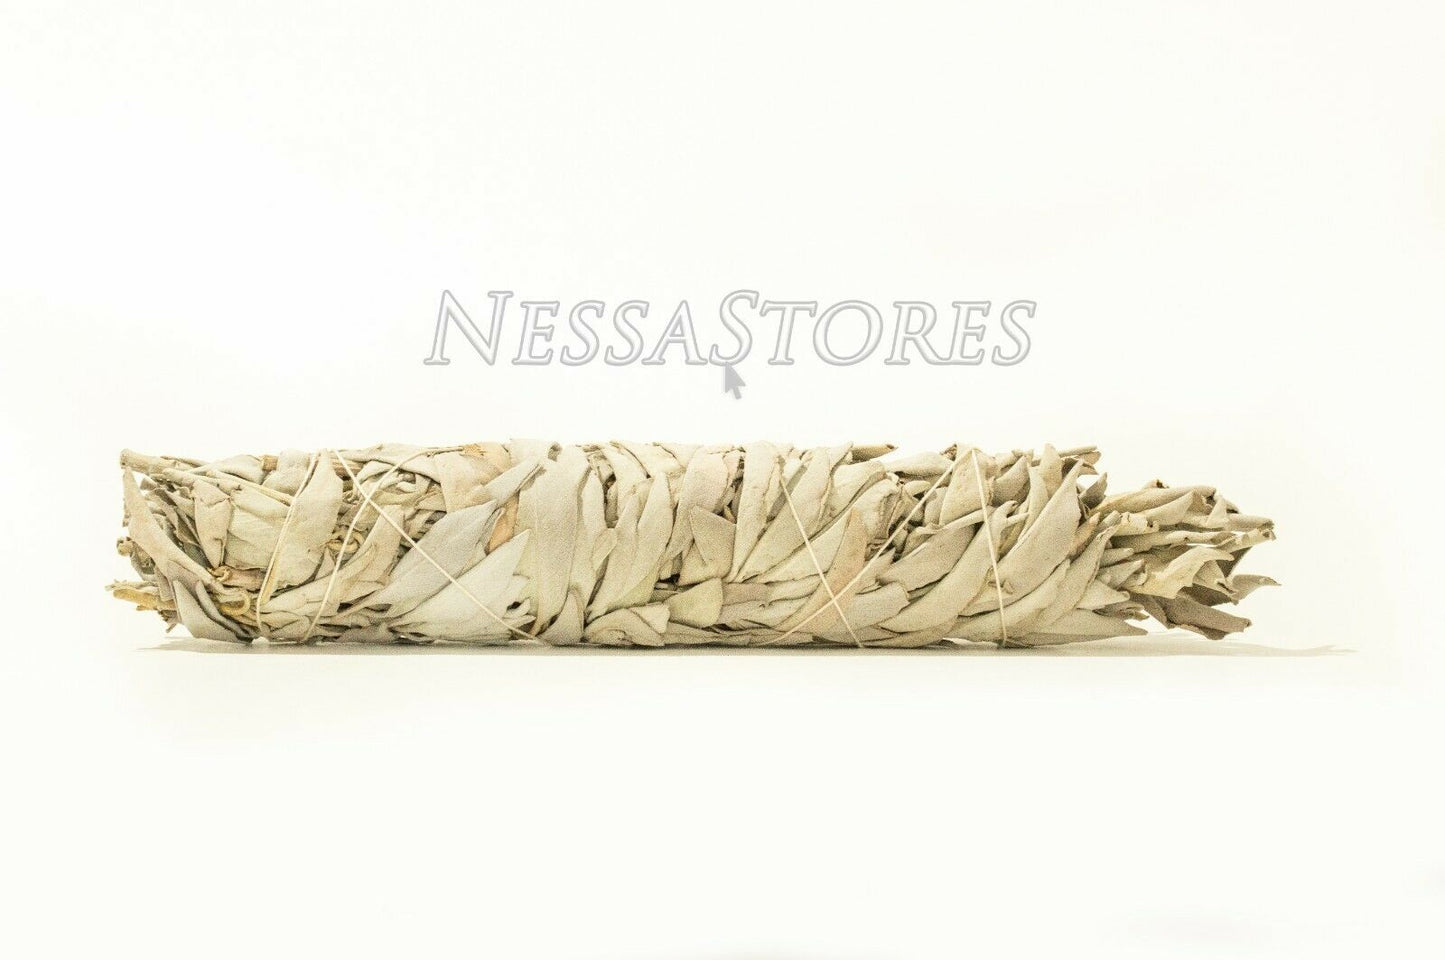 NessaStores California White Sage Smudge Incense 8"-9" Bundle (15 pcs) #JC-010